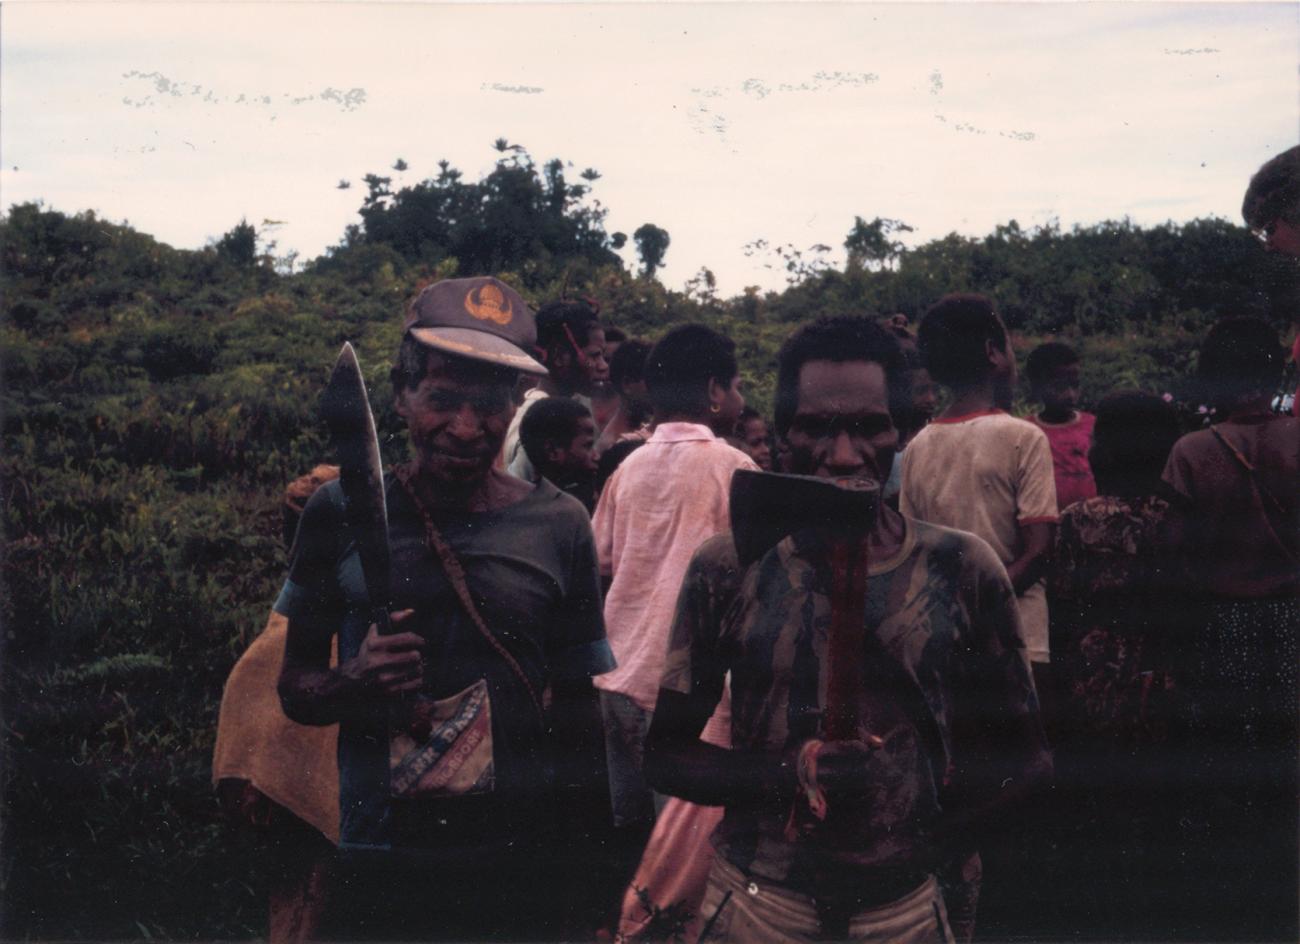 BD/309/41 - 
Dorp Mefkadjen, groepsfoto van mannen met bijl respectievelijk machete
